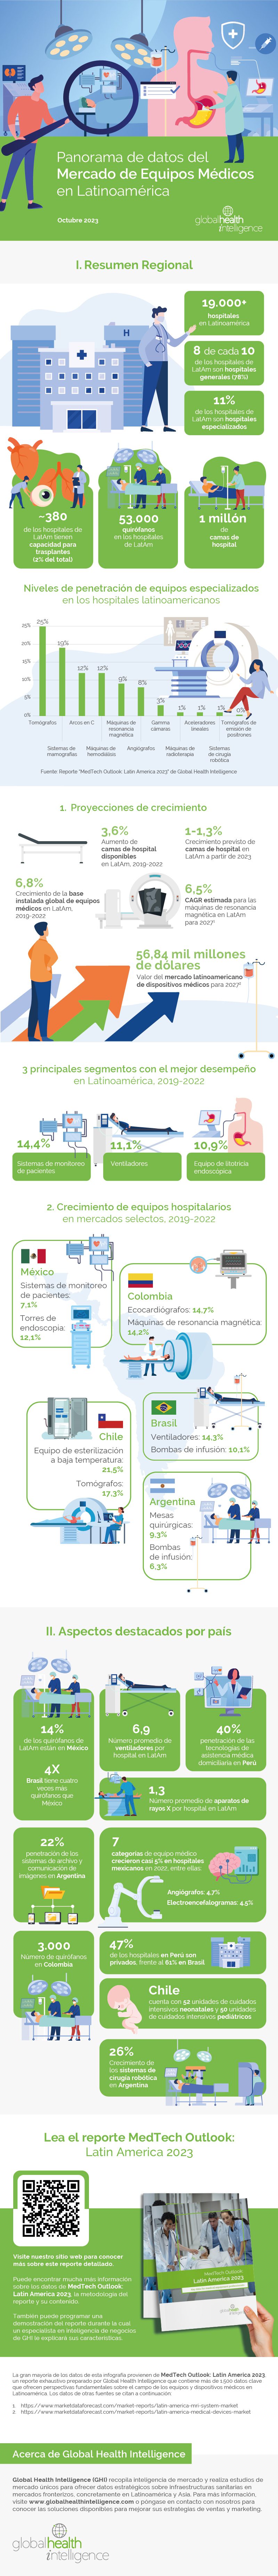 INFOGRAFÍA: Panorama de Datos del Mercado de Equipos Médicos en Latinoamérica